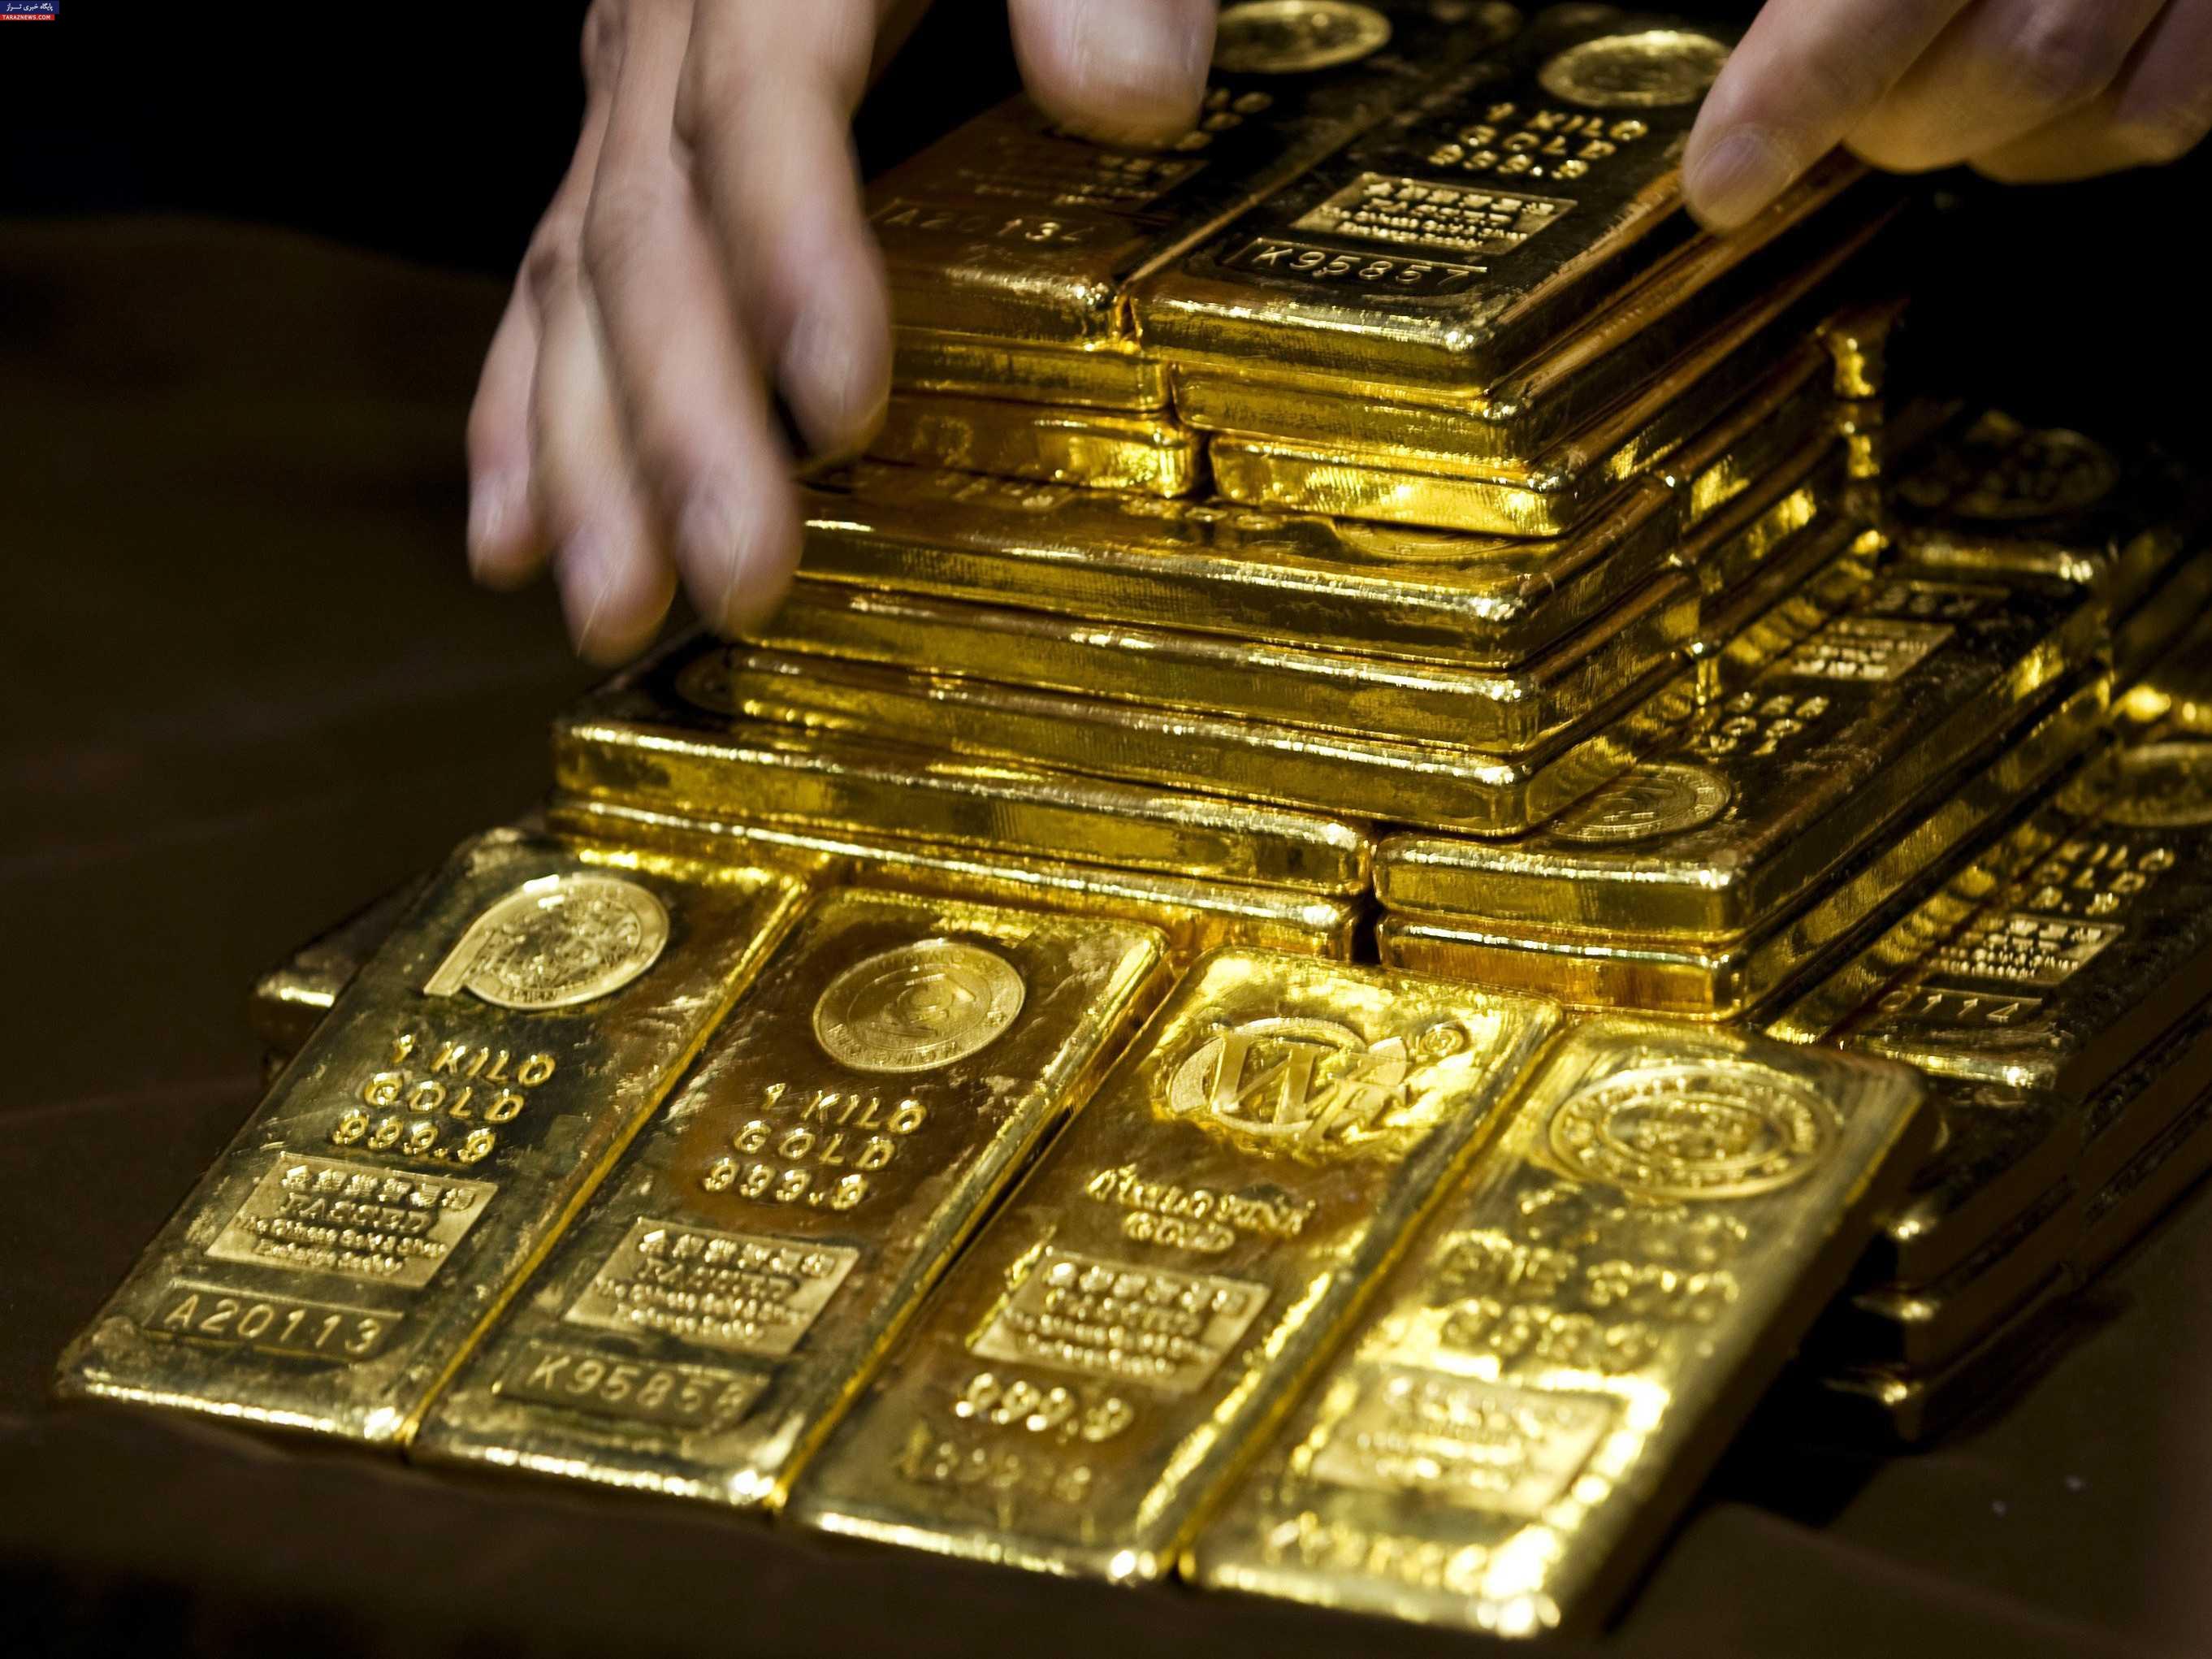 بازار طلا از فردا به مدت یک هفته تعطیل می شود/ انتظار کاهش قیمت ها در ایام محرم وجود ندارد